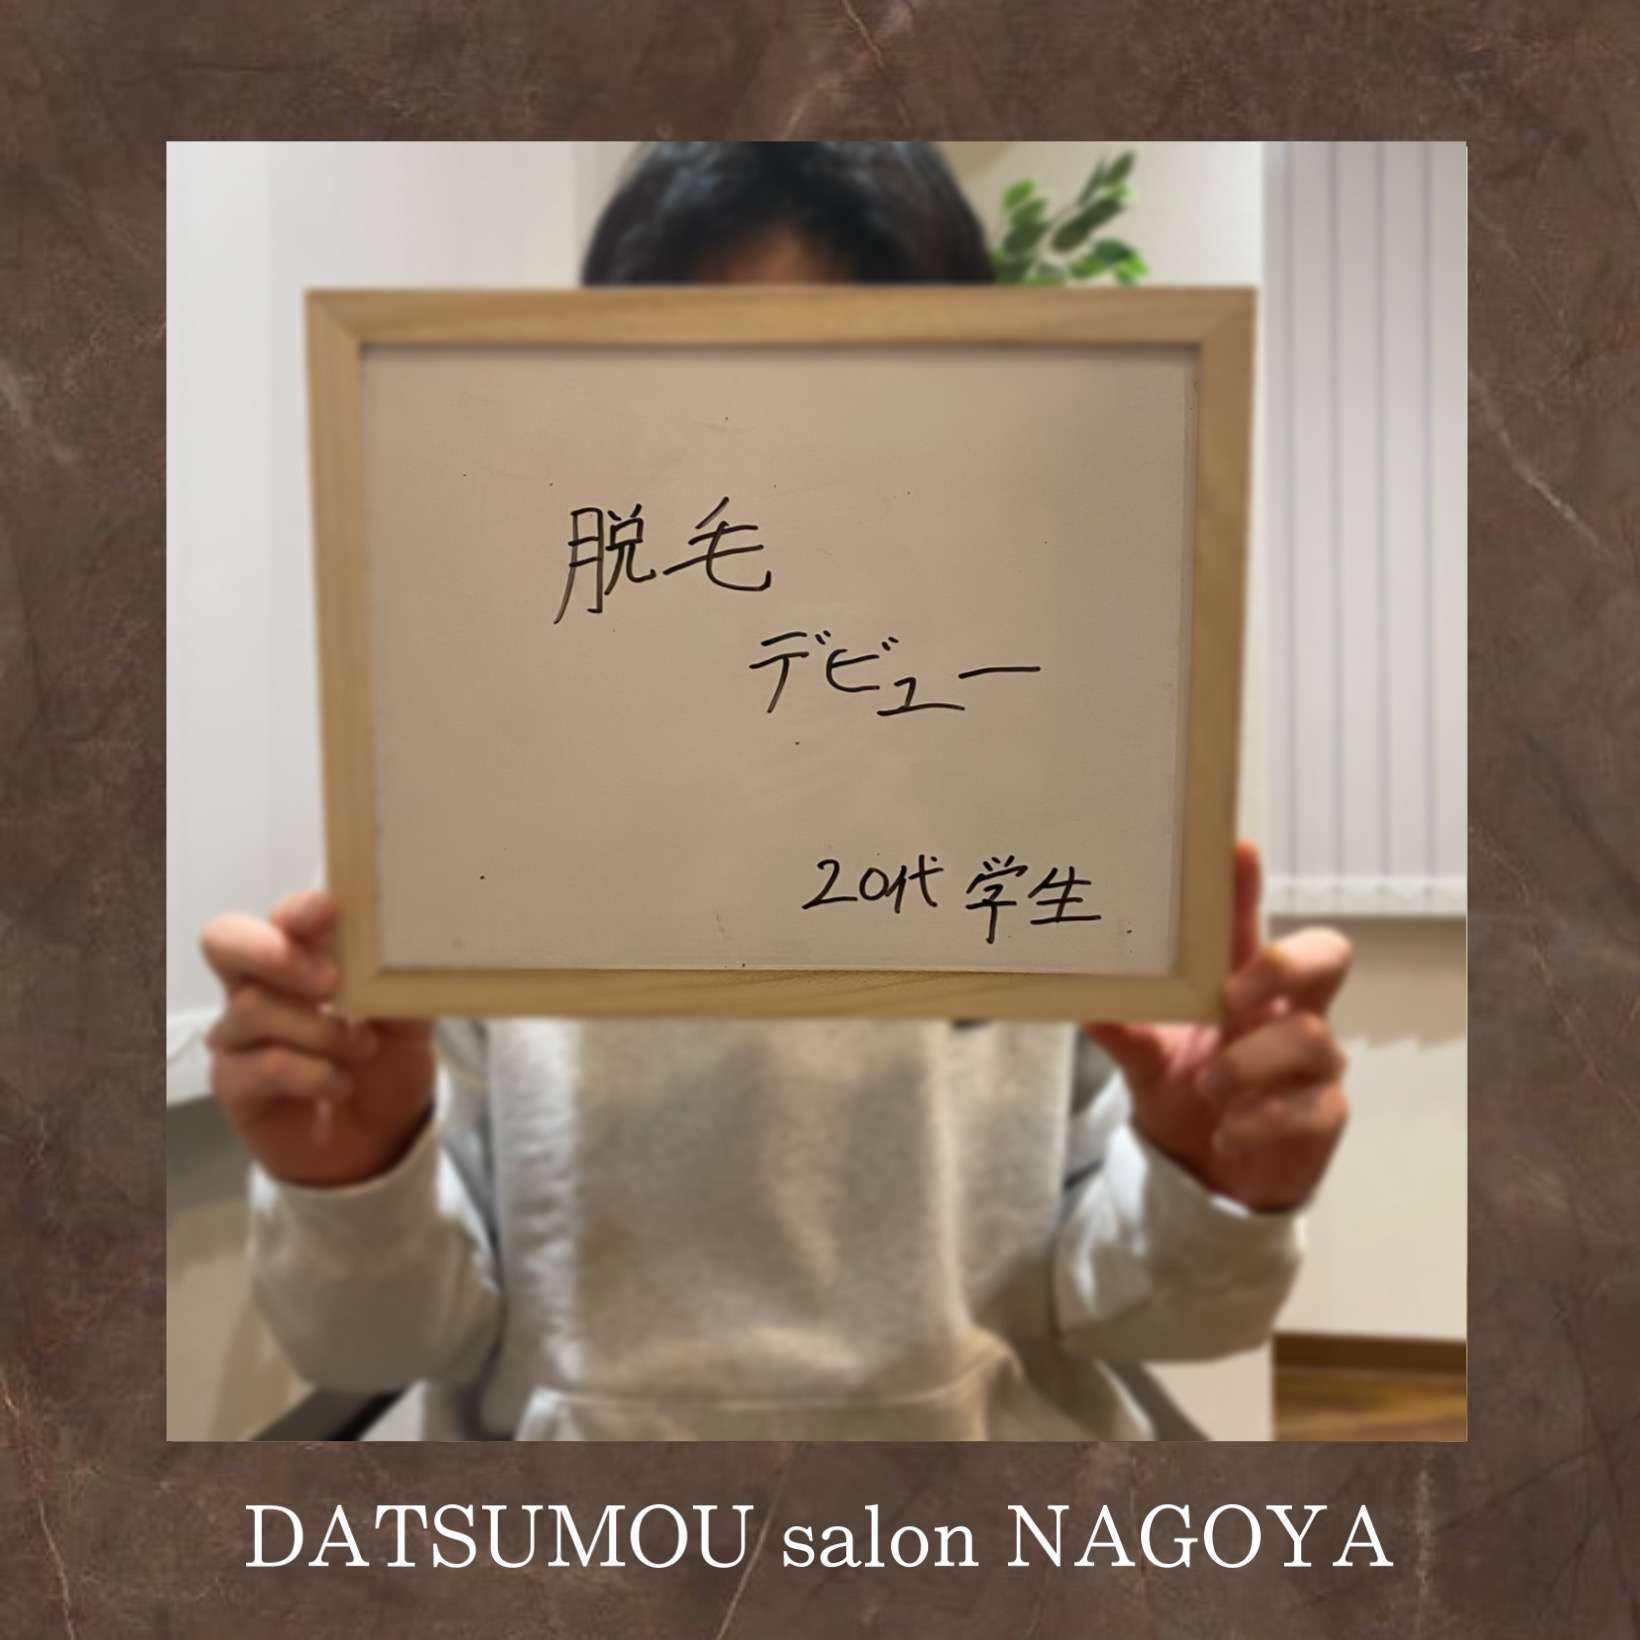 メンズ脱毛サロンDATSUMOU salon NAGOYA学生さん脱毛できます！！